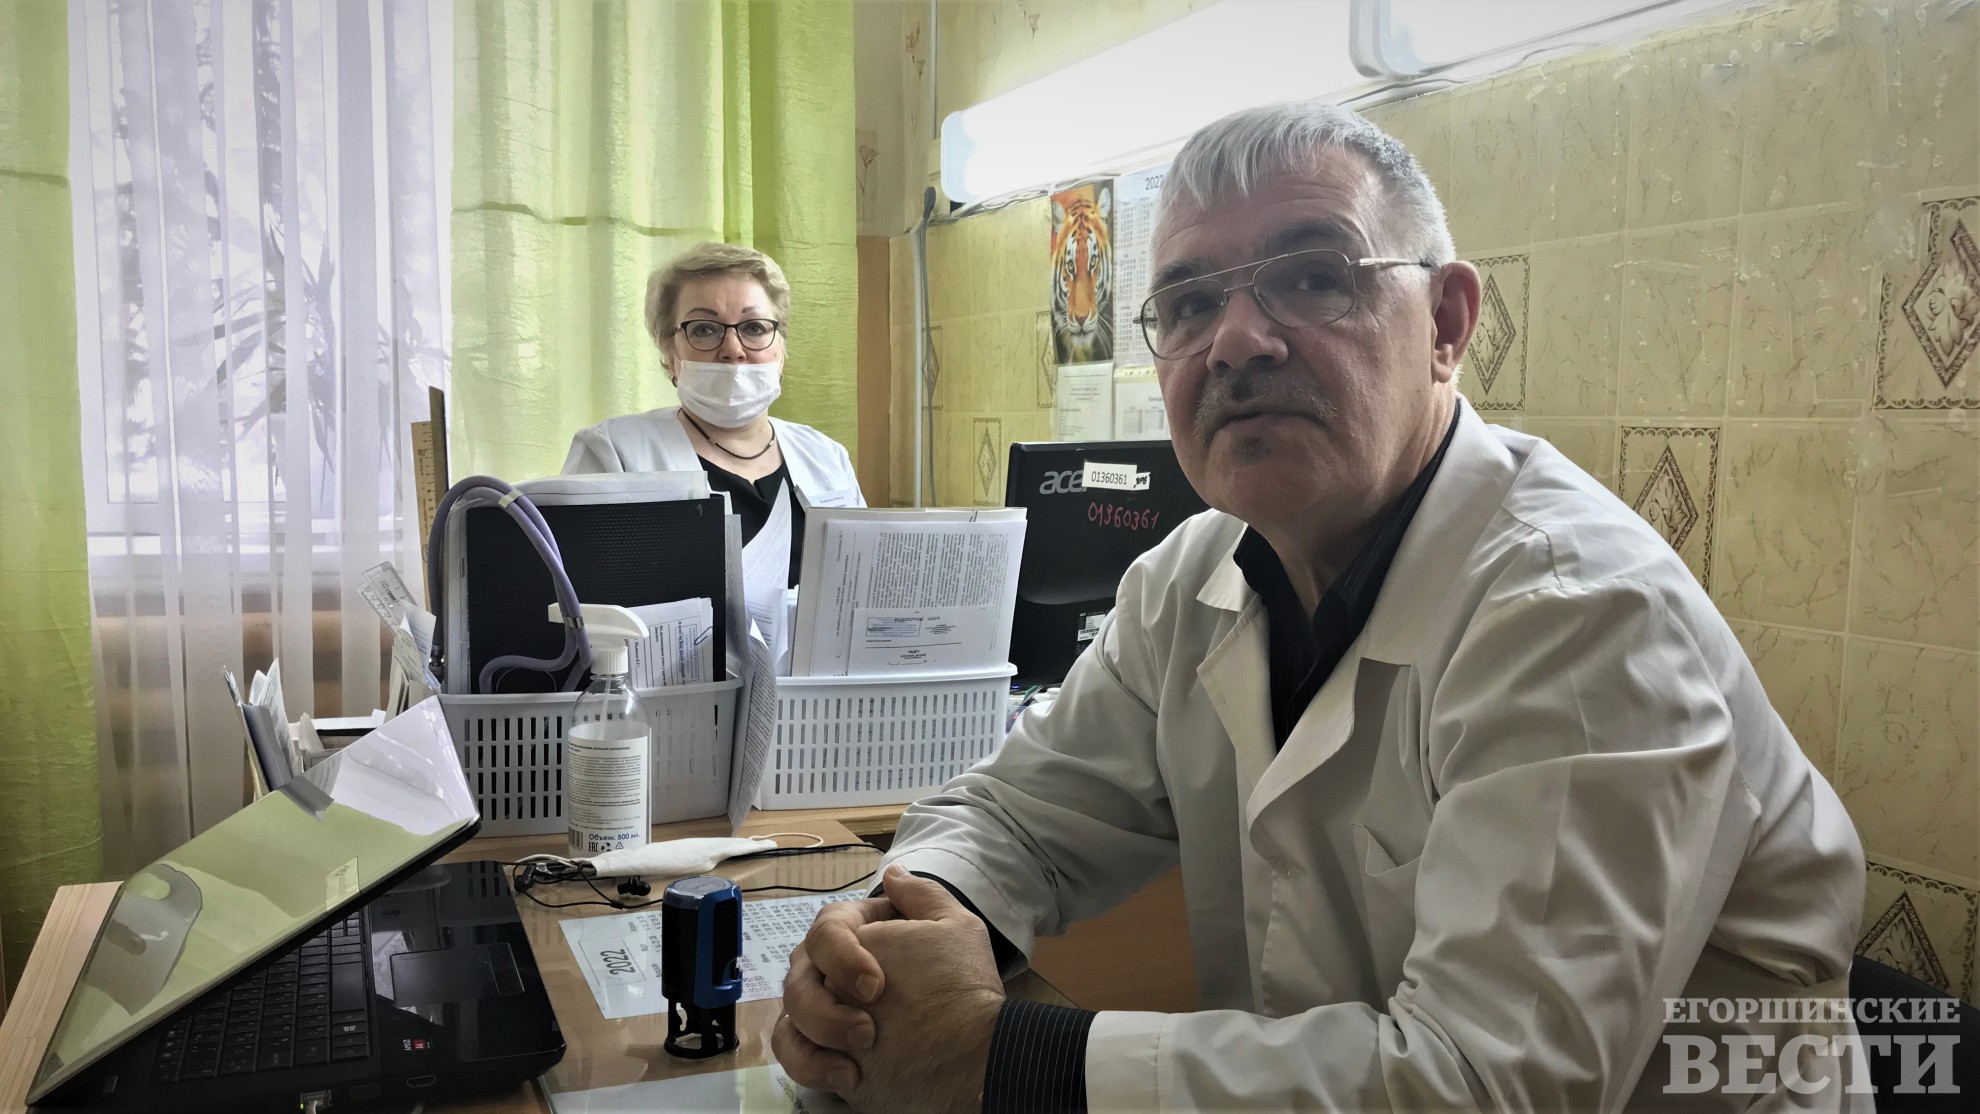 Опытный доктор Евгений Пьянков работает в Артемовской больнице больше 35 лет. Помог многим, кто был уже на дне жизни. Фото предоставлено АЦРБ.